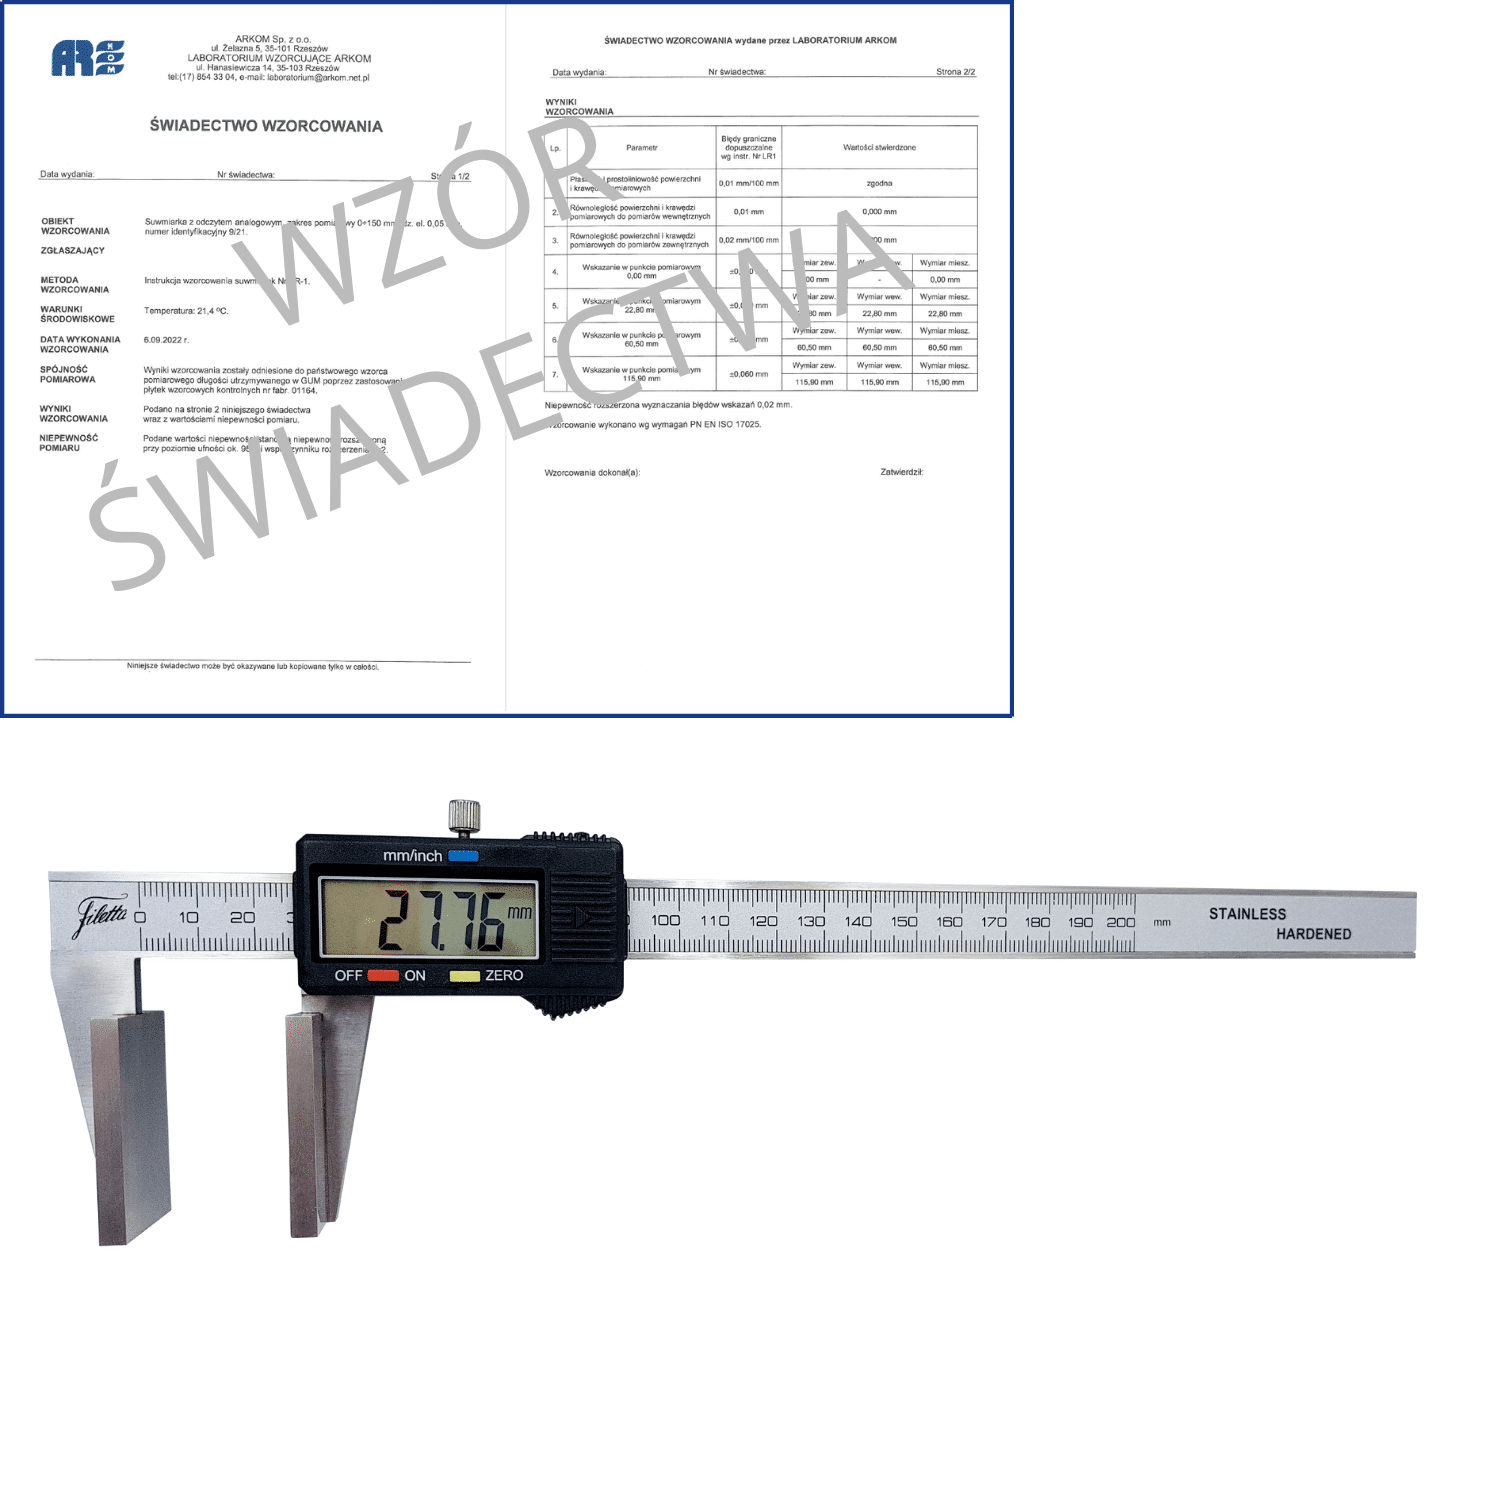 SCHUT suwmiarka elektroniczna 150/0.01 mm do pomiarów grubości lin + świadectwo wzorcowania 910.166 WZORC